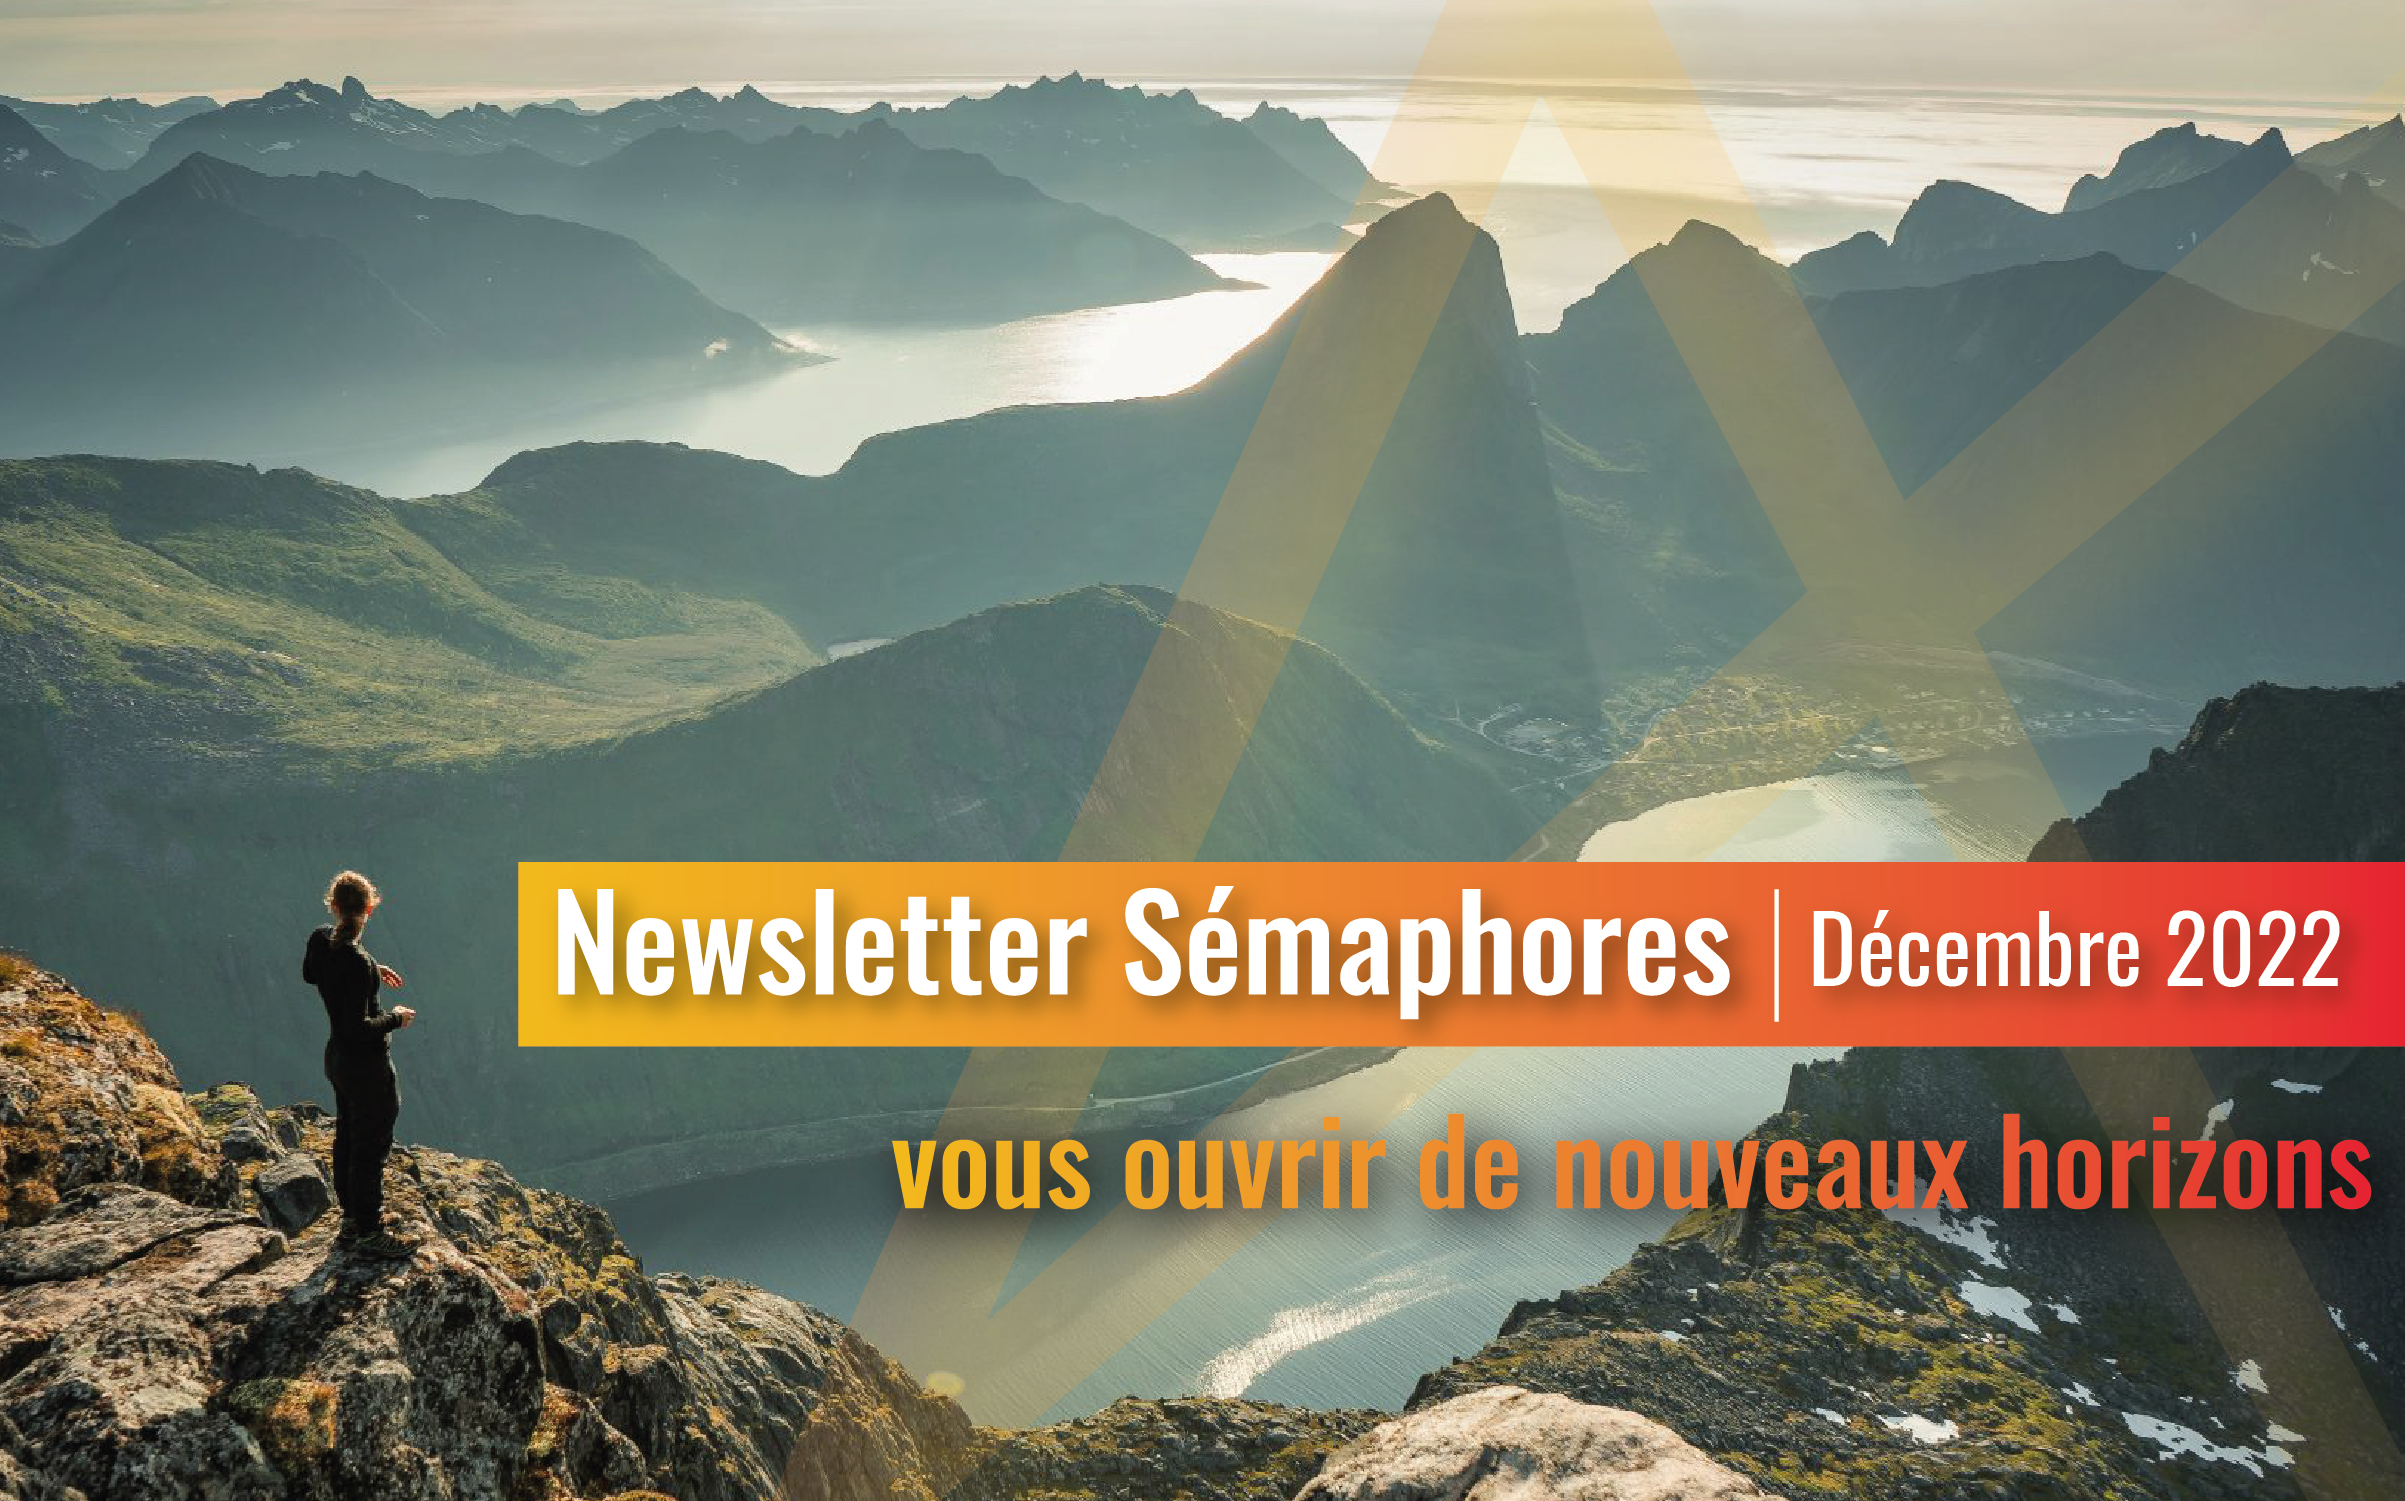 La newsletter Sémaphores - Décembre 2022